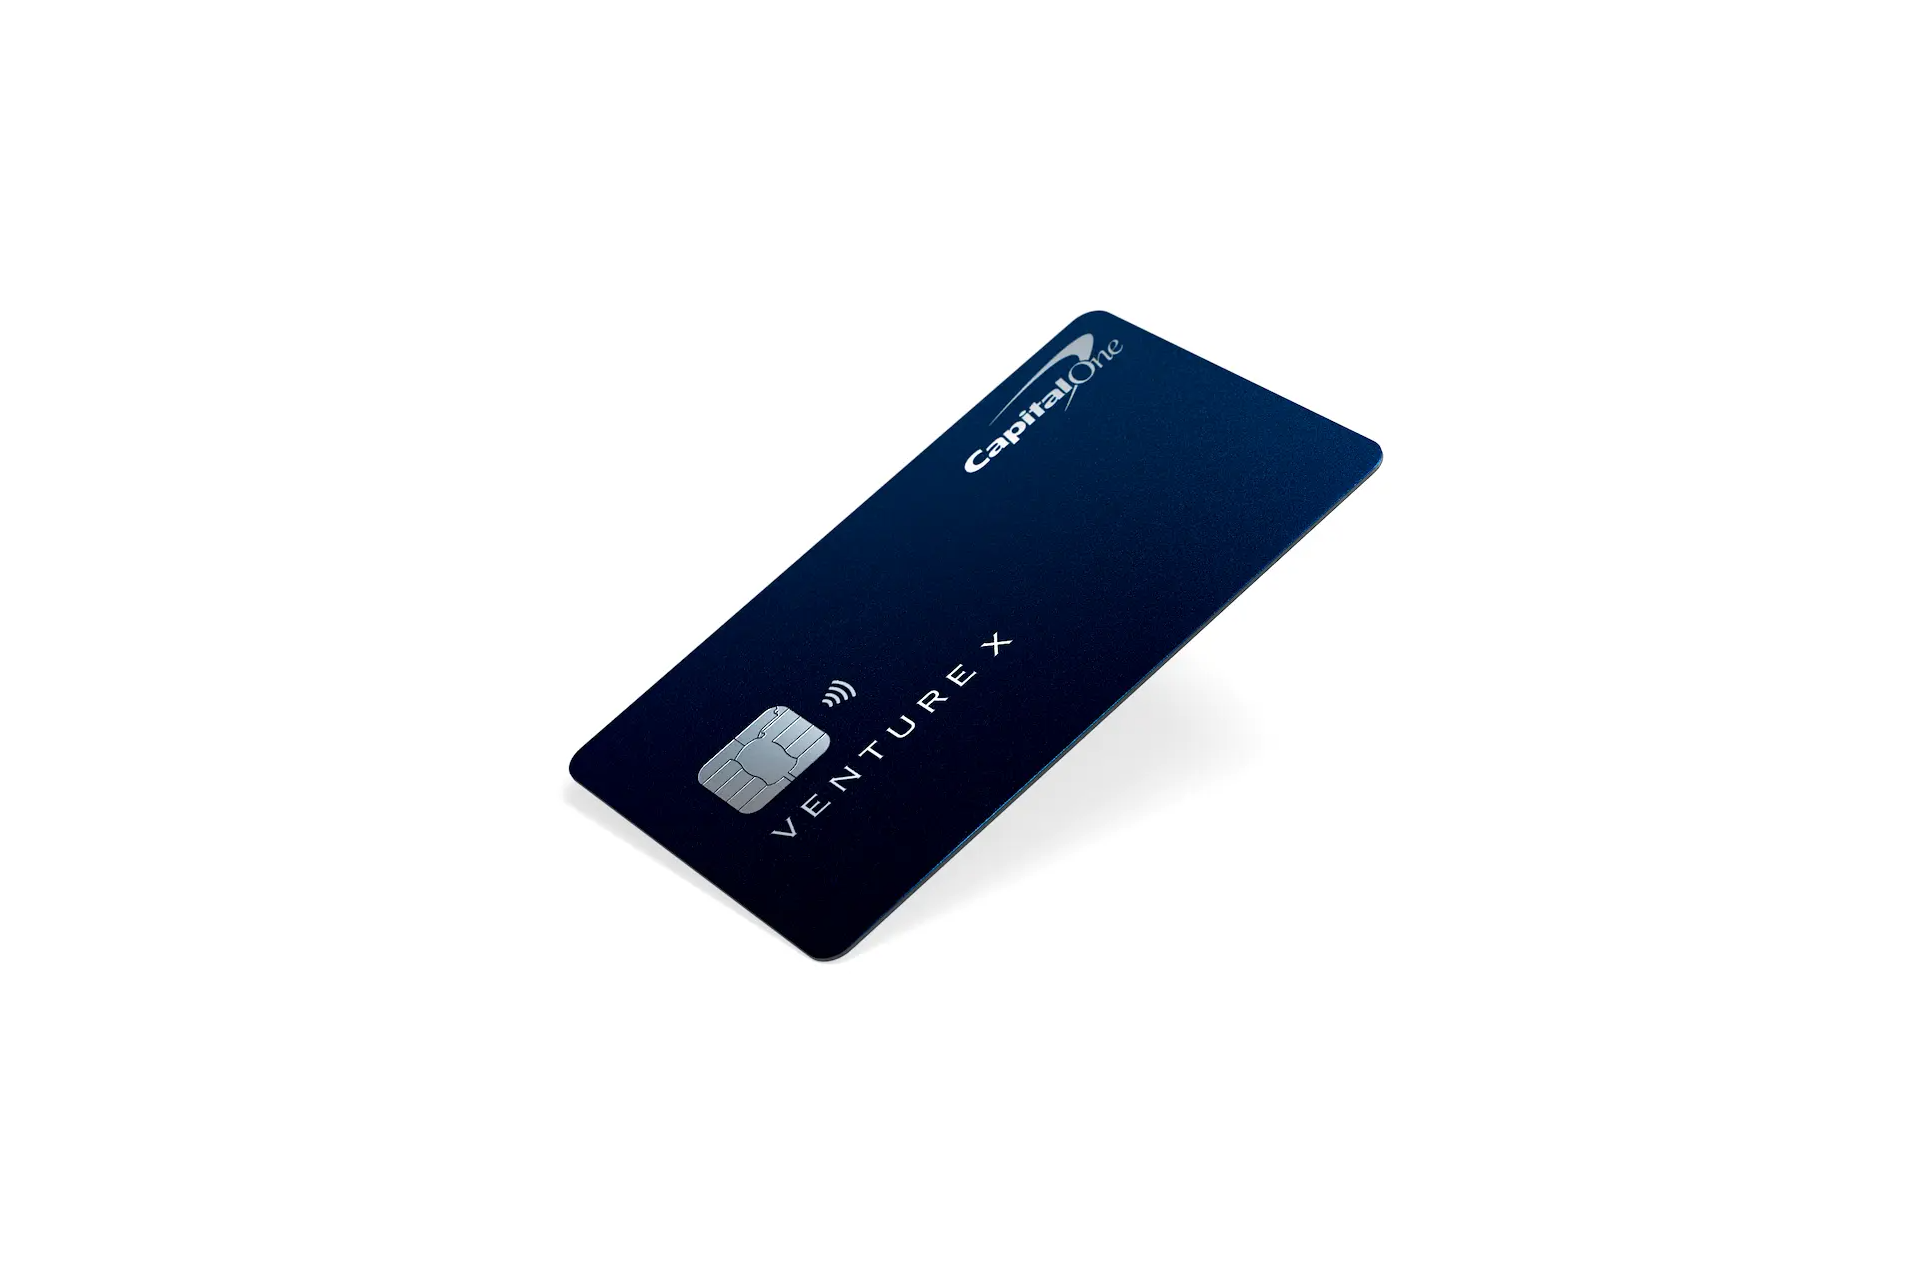 Capital 1 Venture X Rewards Visa Infinite Credit Card Launch